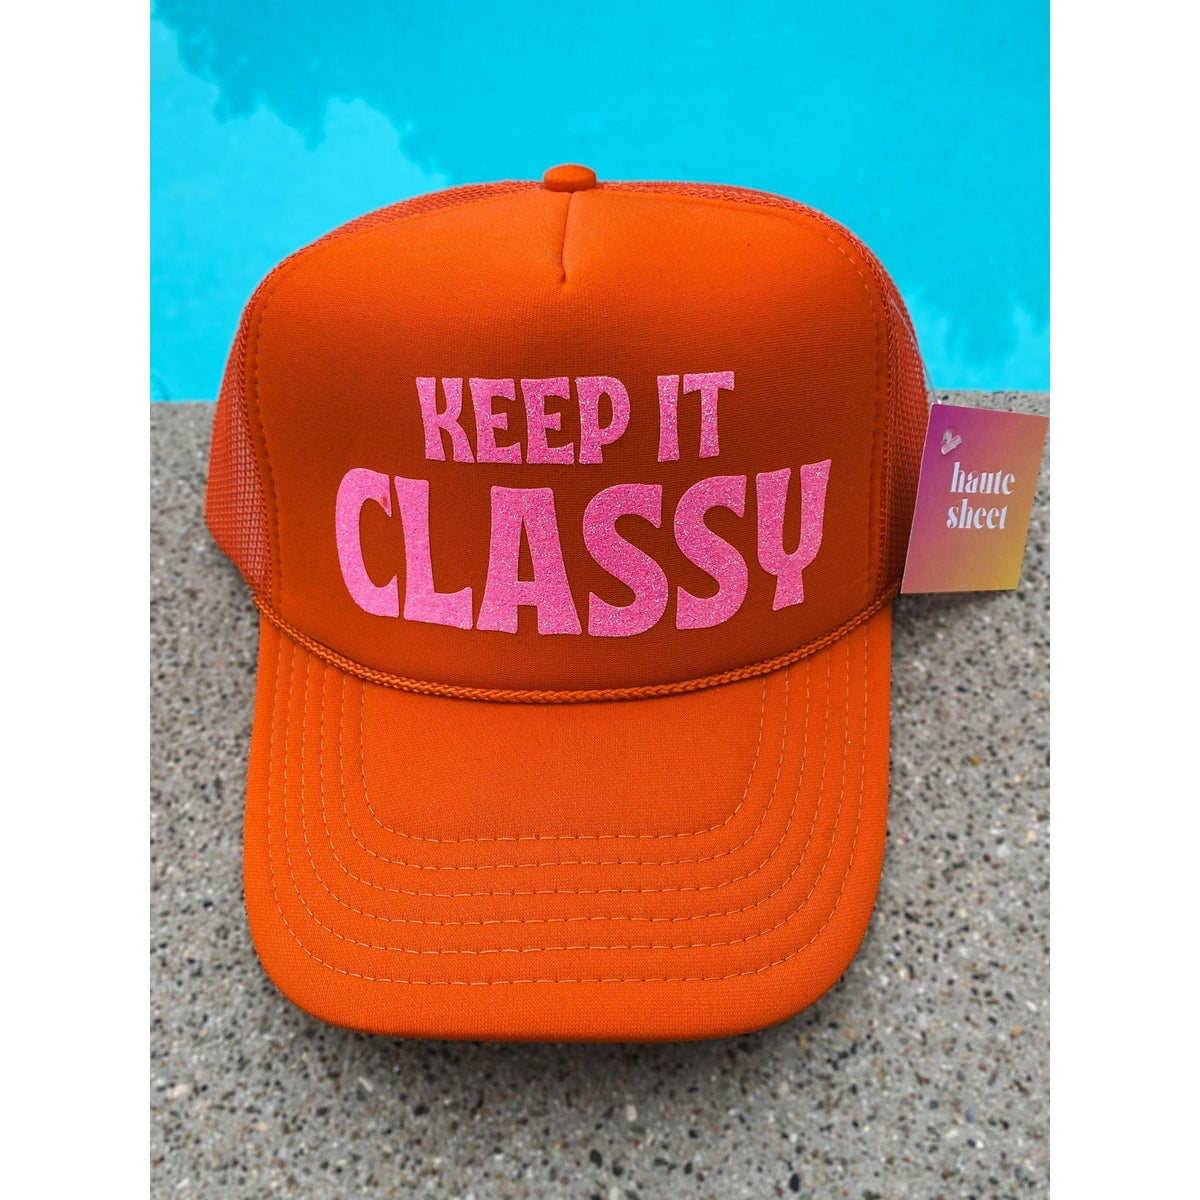 Keep It Classy - Haute Sheet Trucker Hat Hats TheFringeCultureCollective